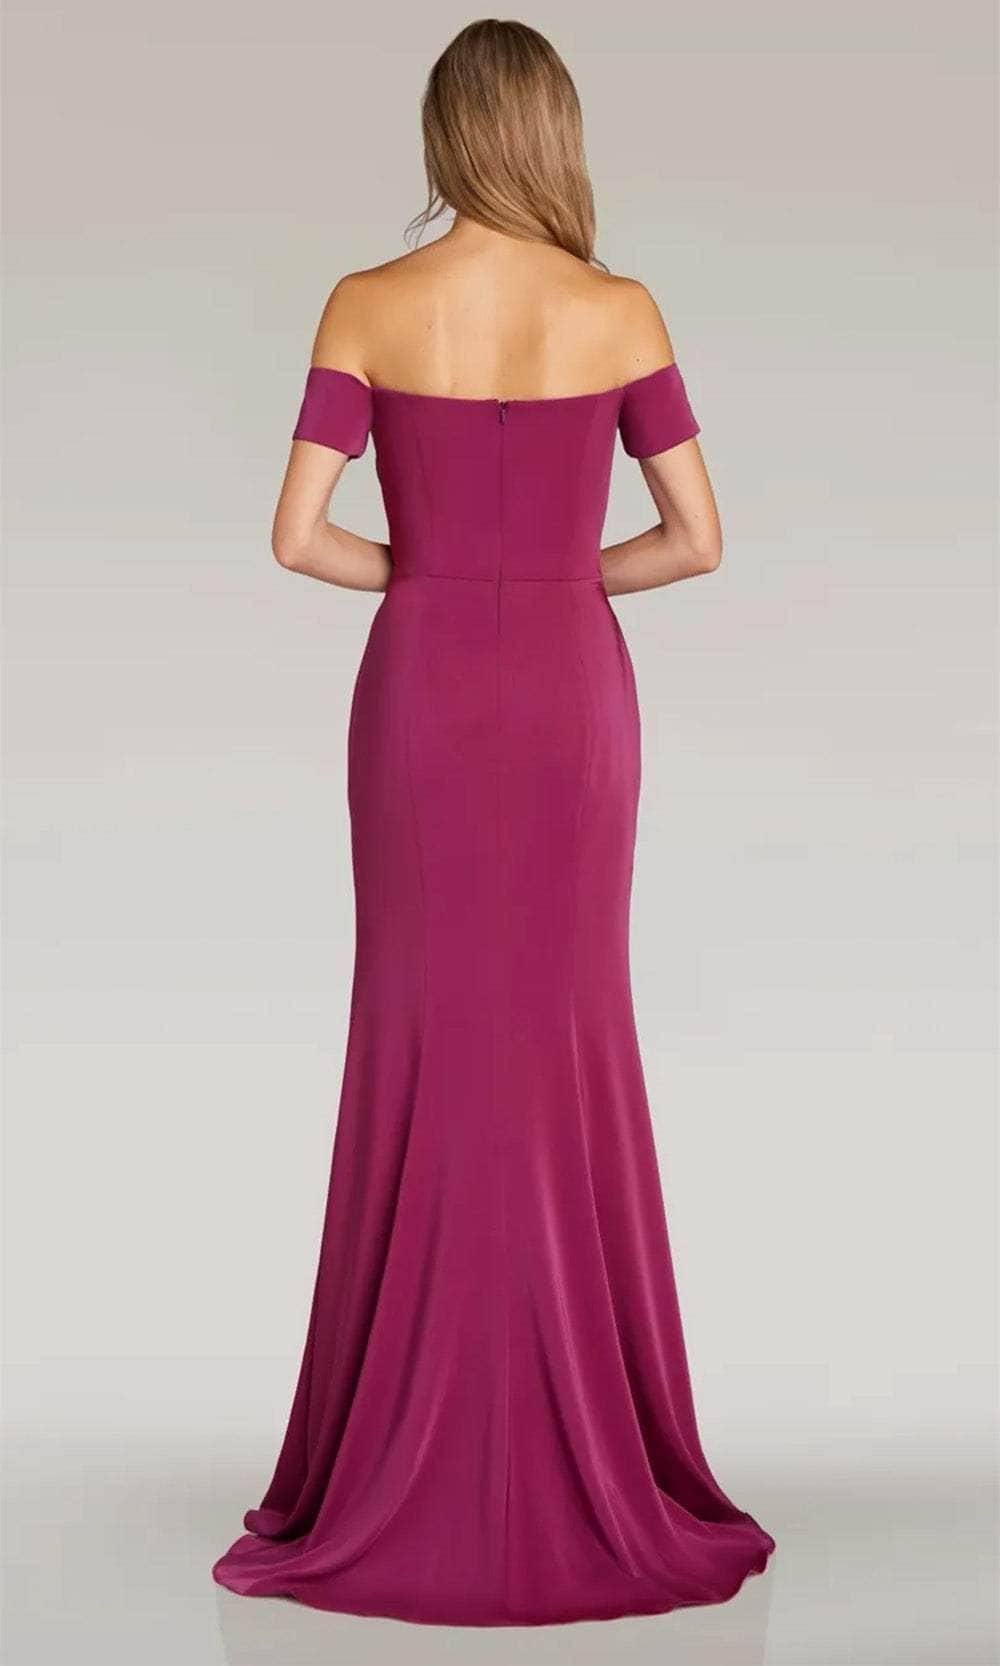 Gia Franco 12310 - Off Shoulder Evening Dress with Slit Evening Dresses 